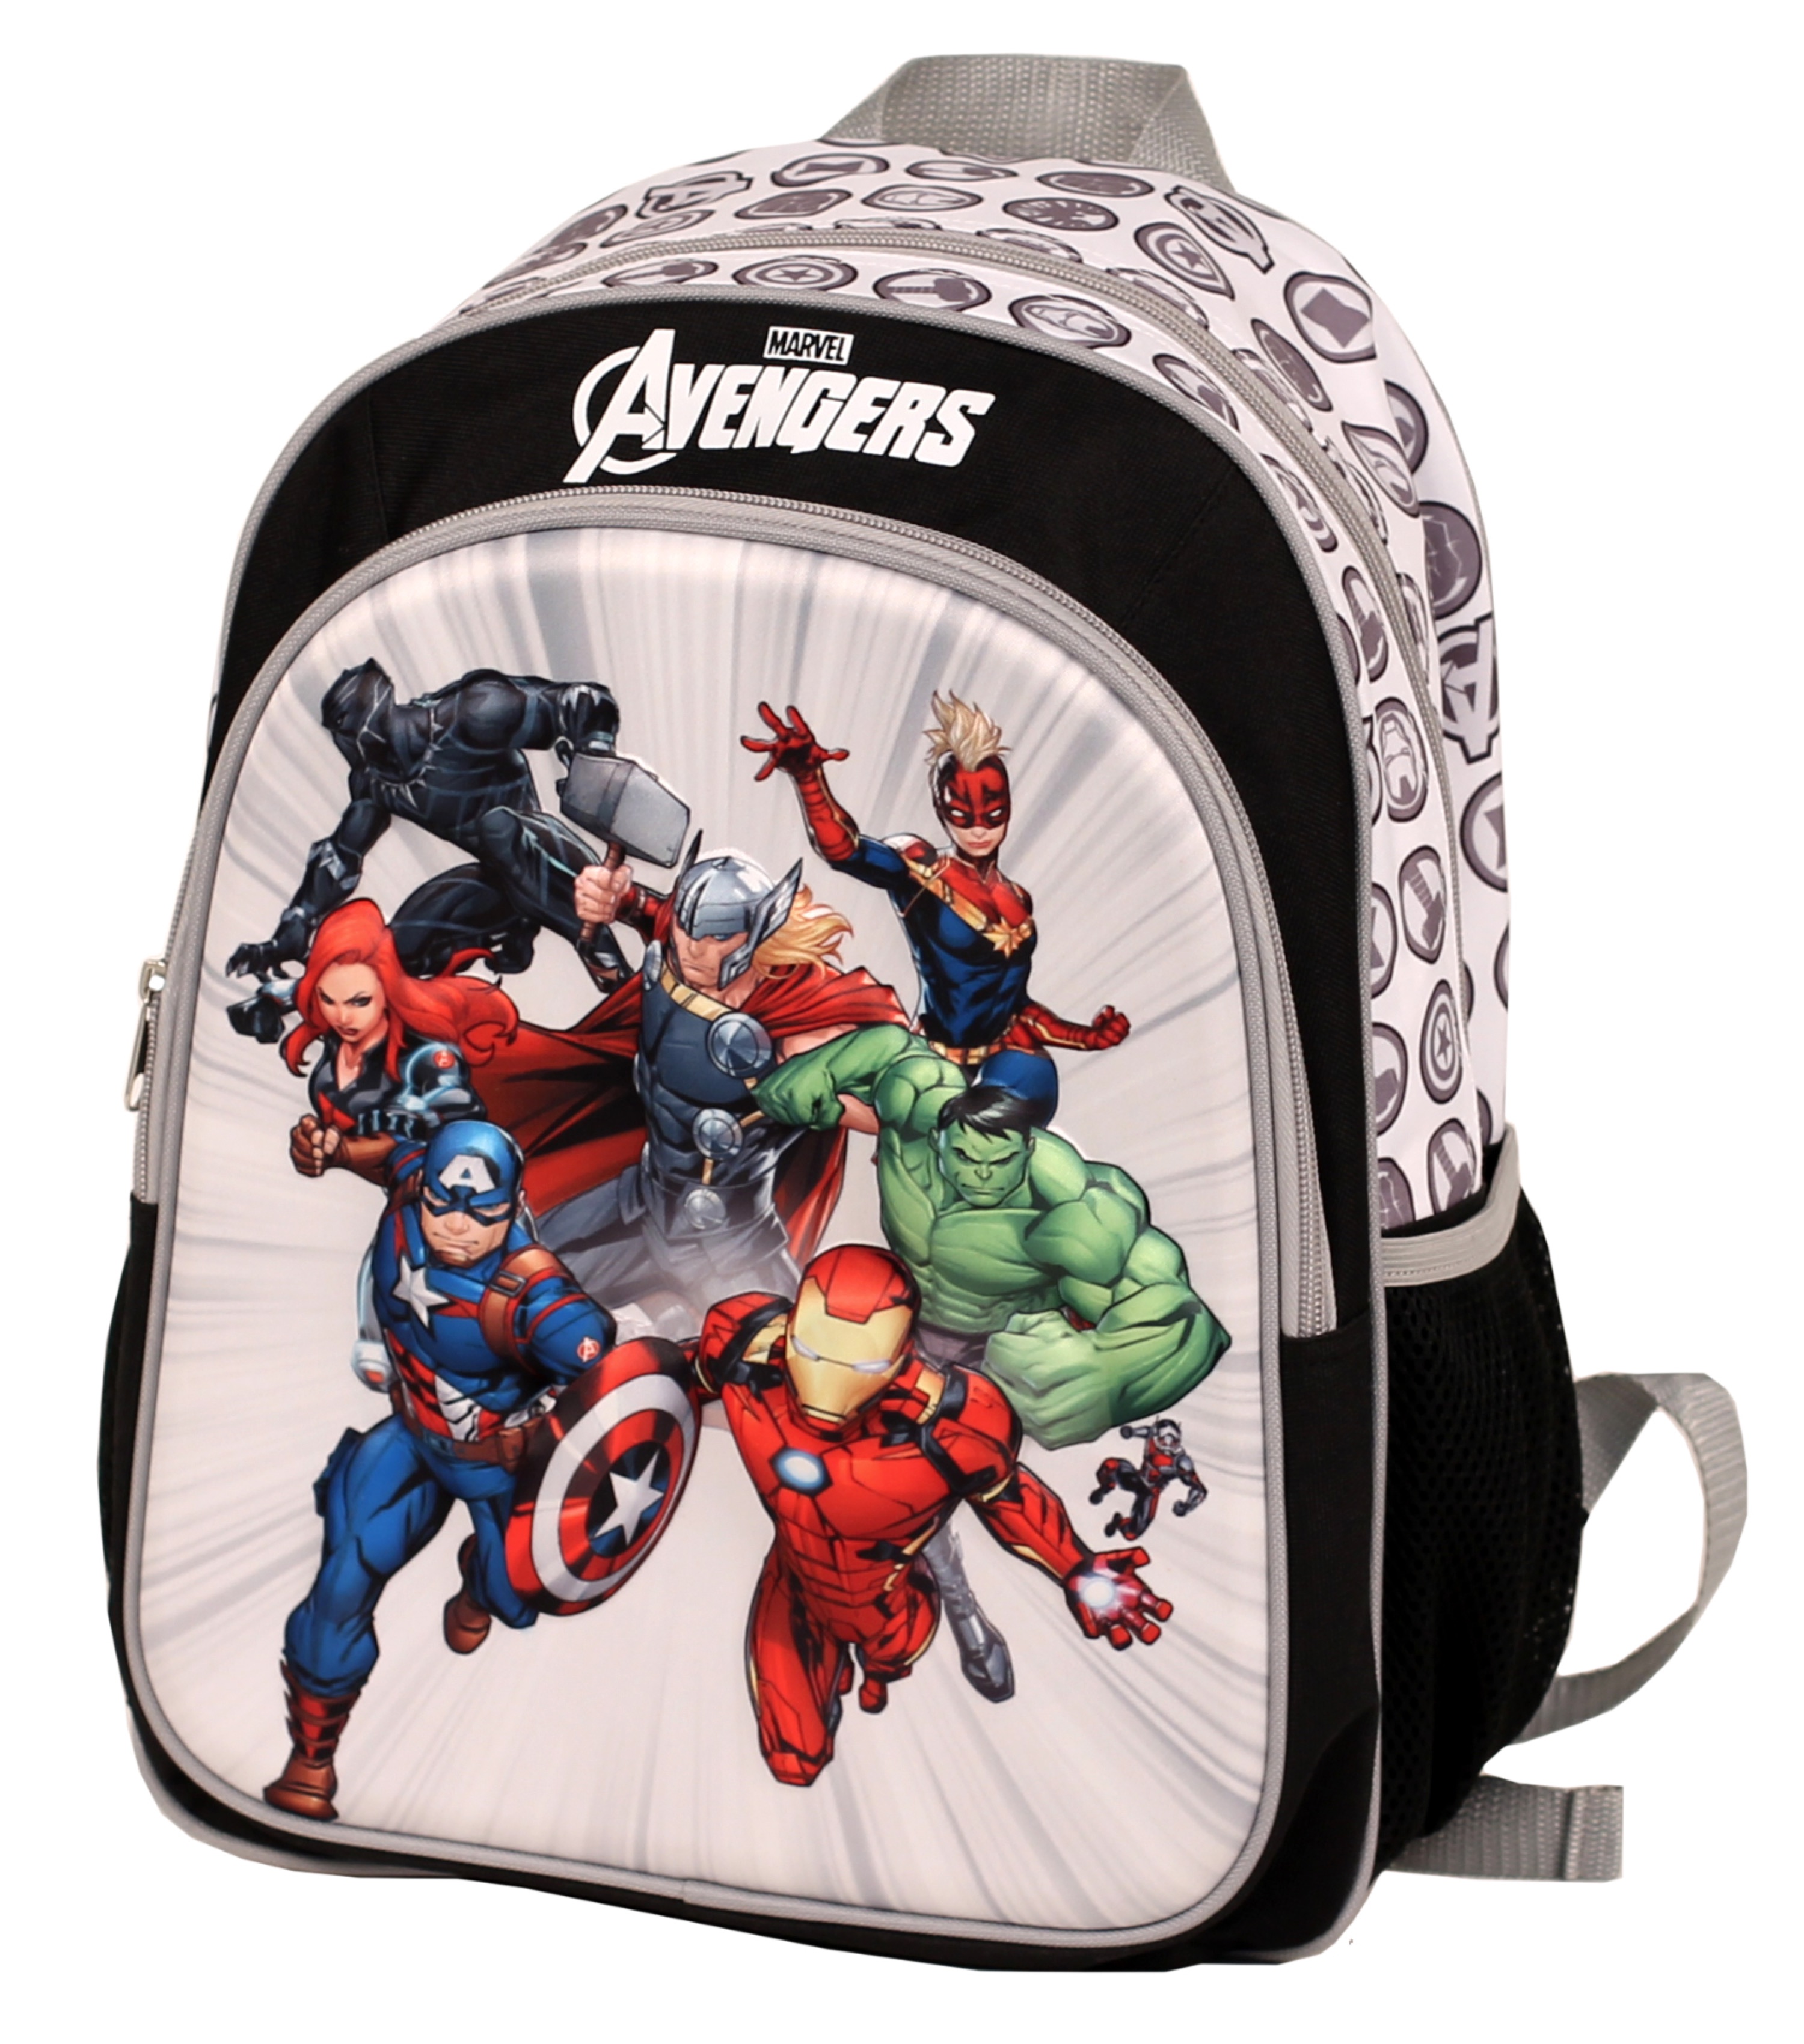 Marvel Avengers Kids Backpack by Marvel (MAR074)